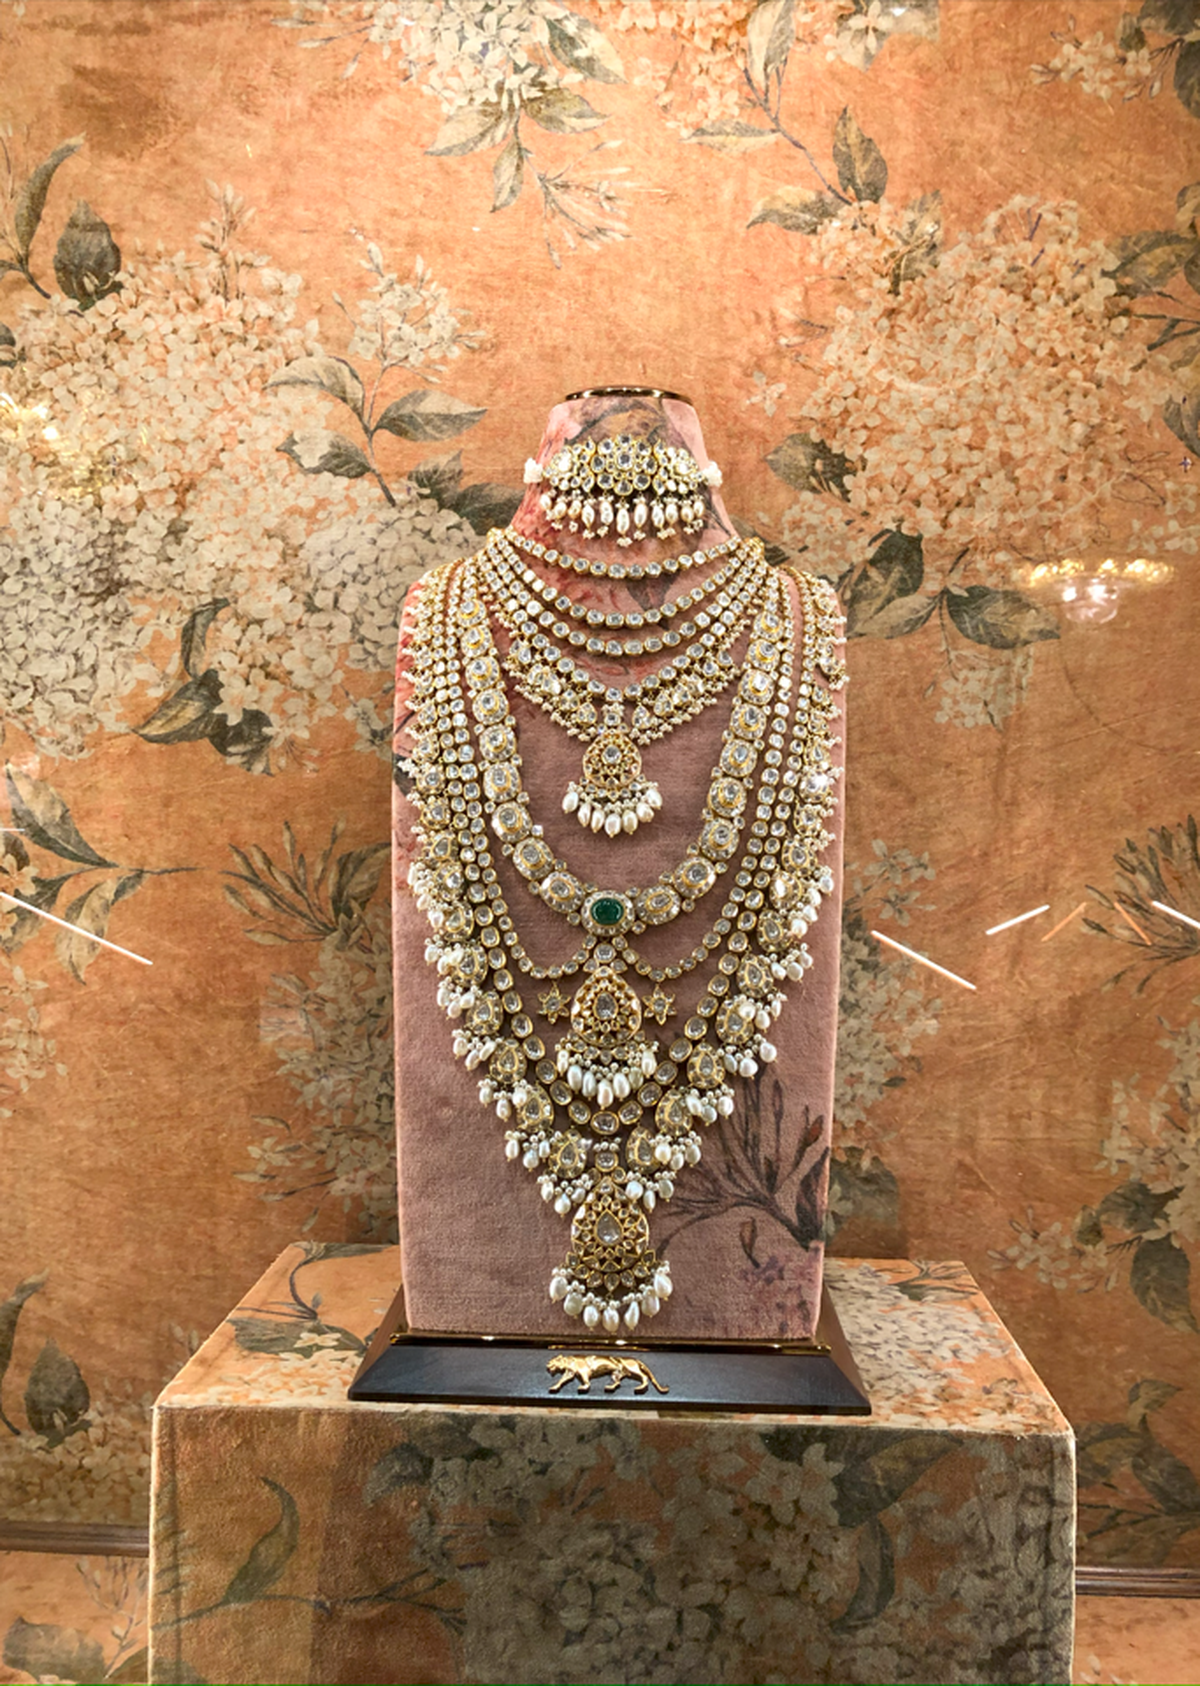 Fine jewellery on display